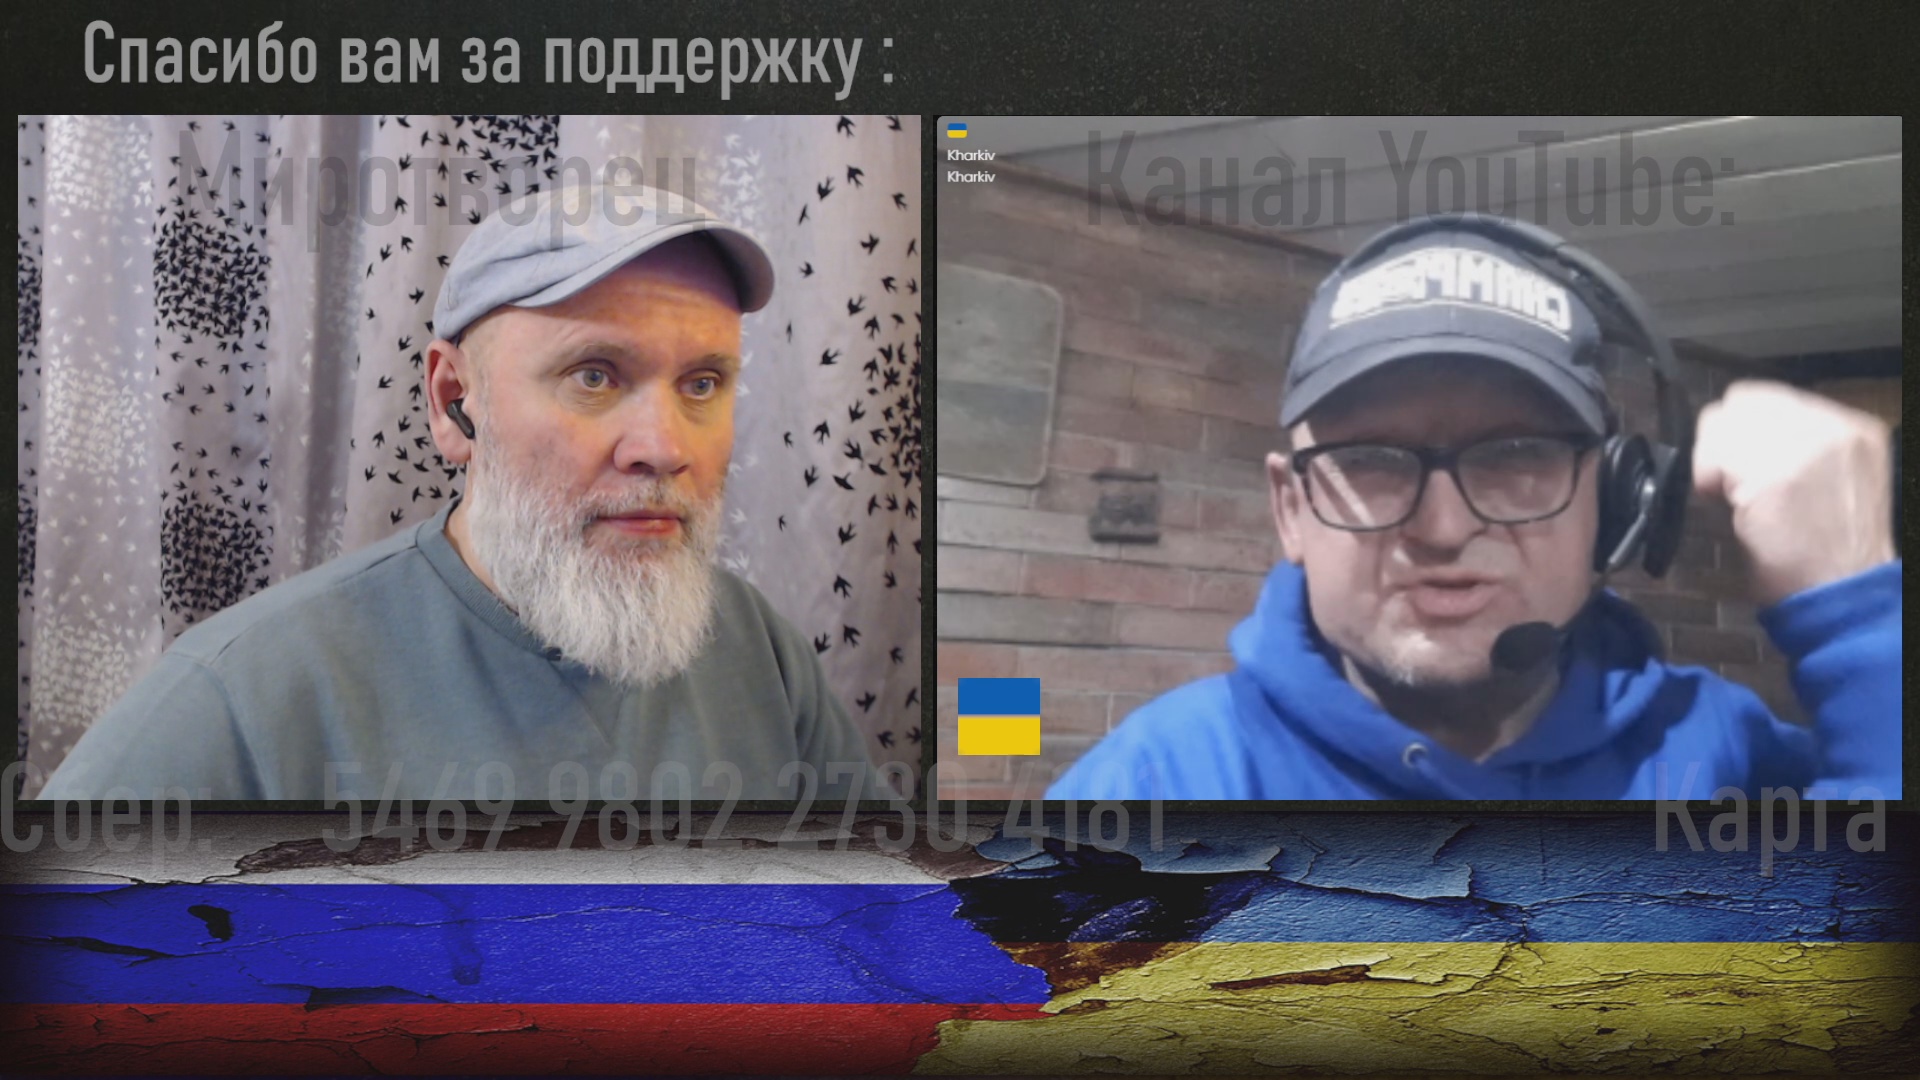 Украинец из Молдавии - злыдень в квадрате. 🔥 РулетТВ 🔥